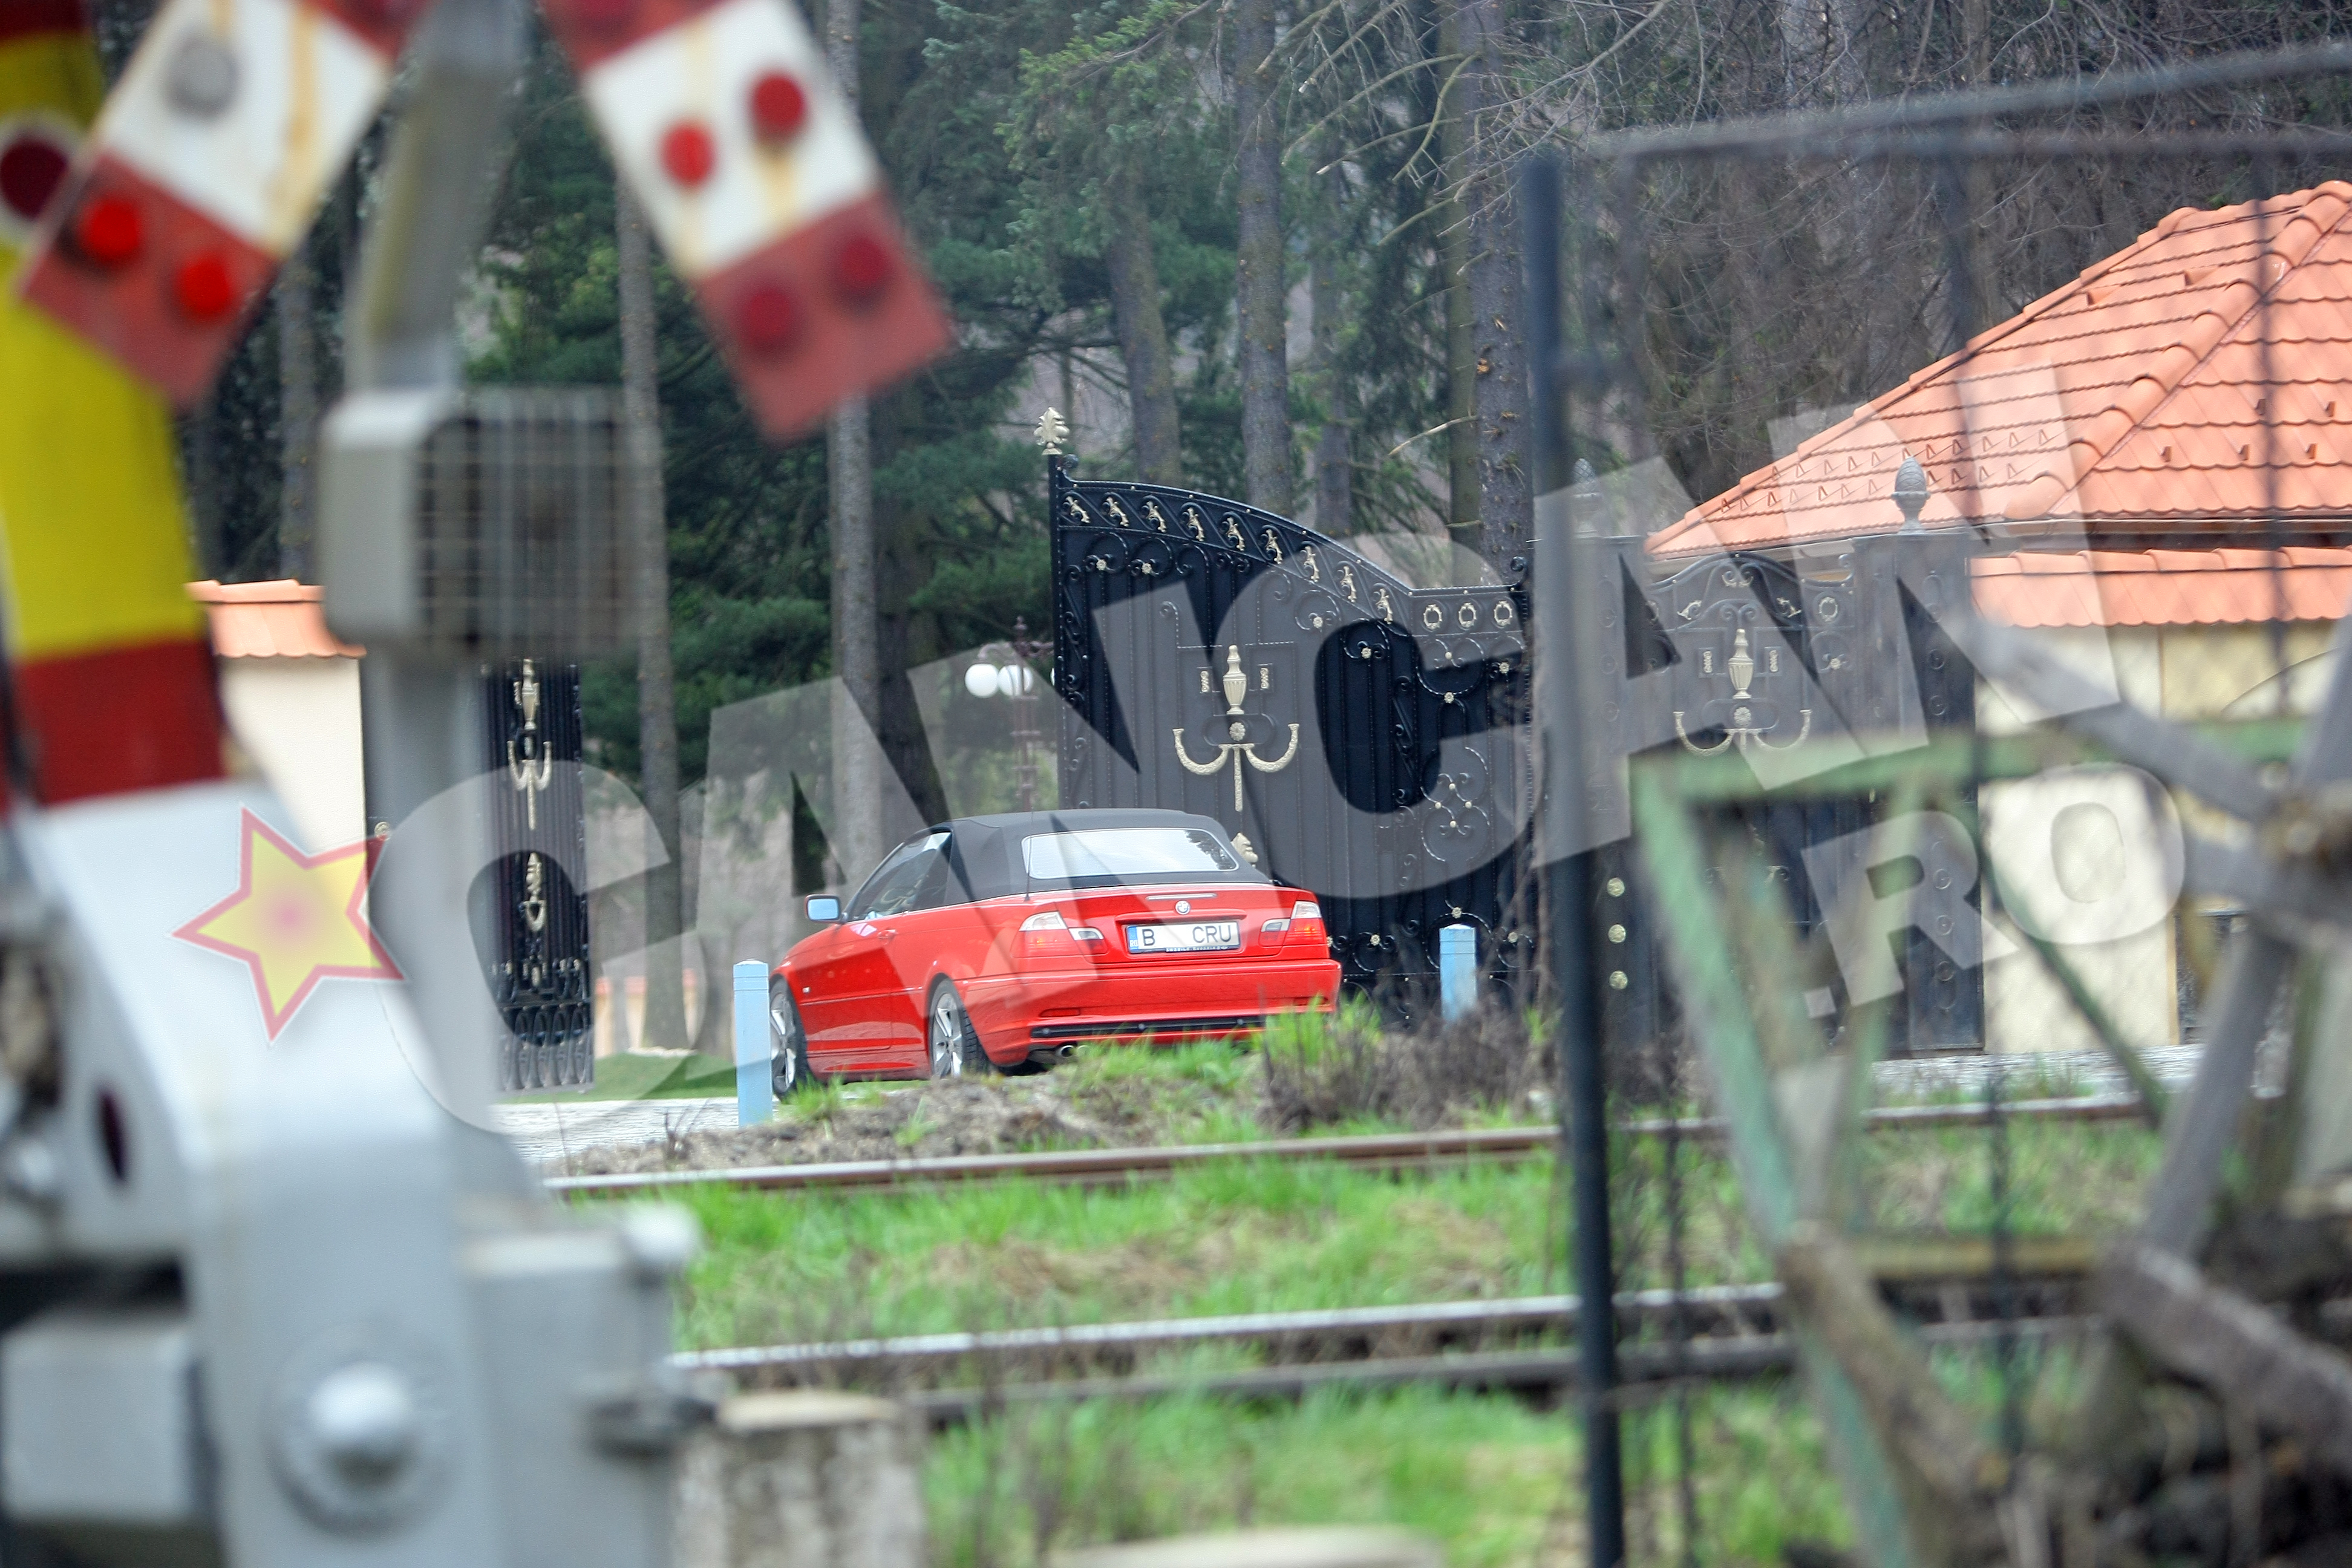 Daniela Crudu a fost fotografiata de paparazzi Cancan.ro intrand cu masina pe poarta impresionantei resedinte a milionarului